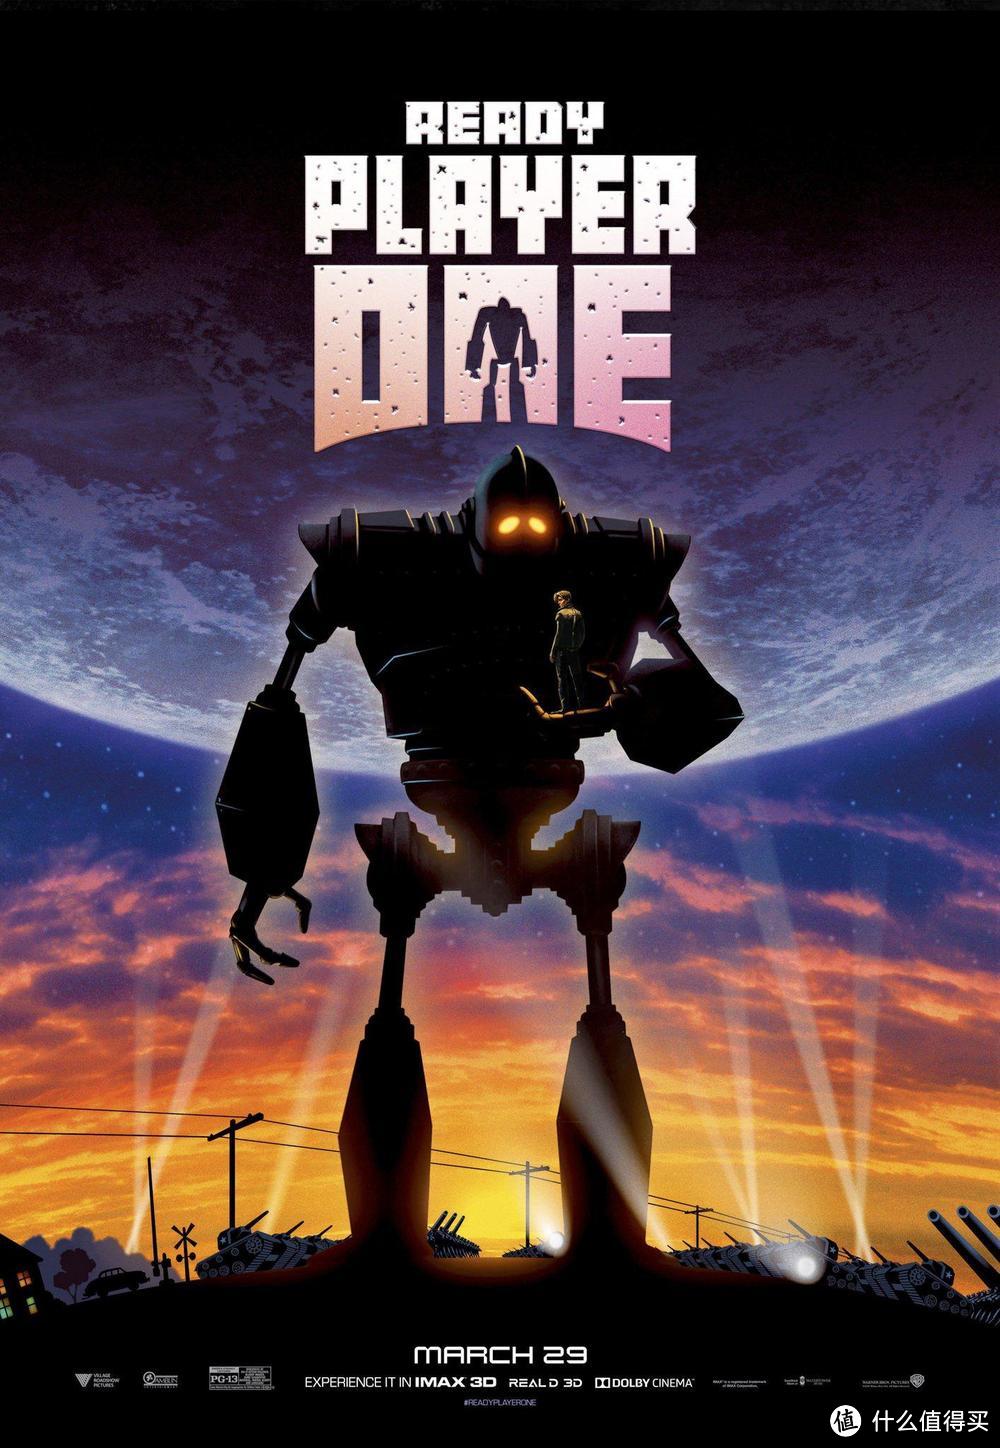 范·迪塞尔在《头号玩家》中再次为钢铁巨人配音。1999年《超人总动员》导演的这部动画片《钢铁巨人》中，这个大机器人就是范·迪塞尔配的。